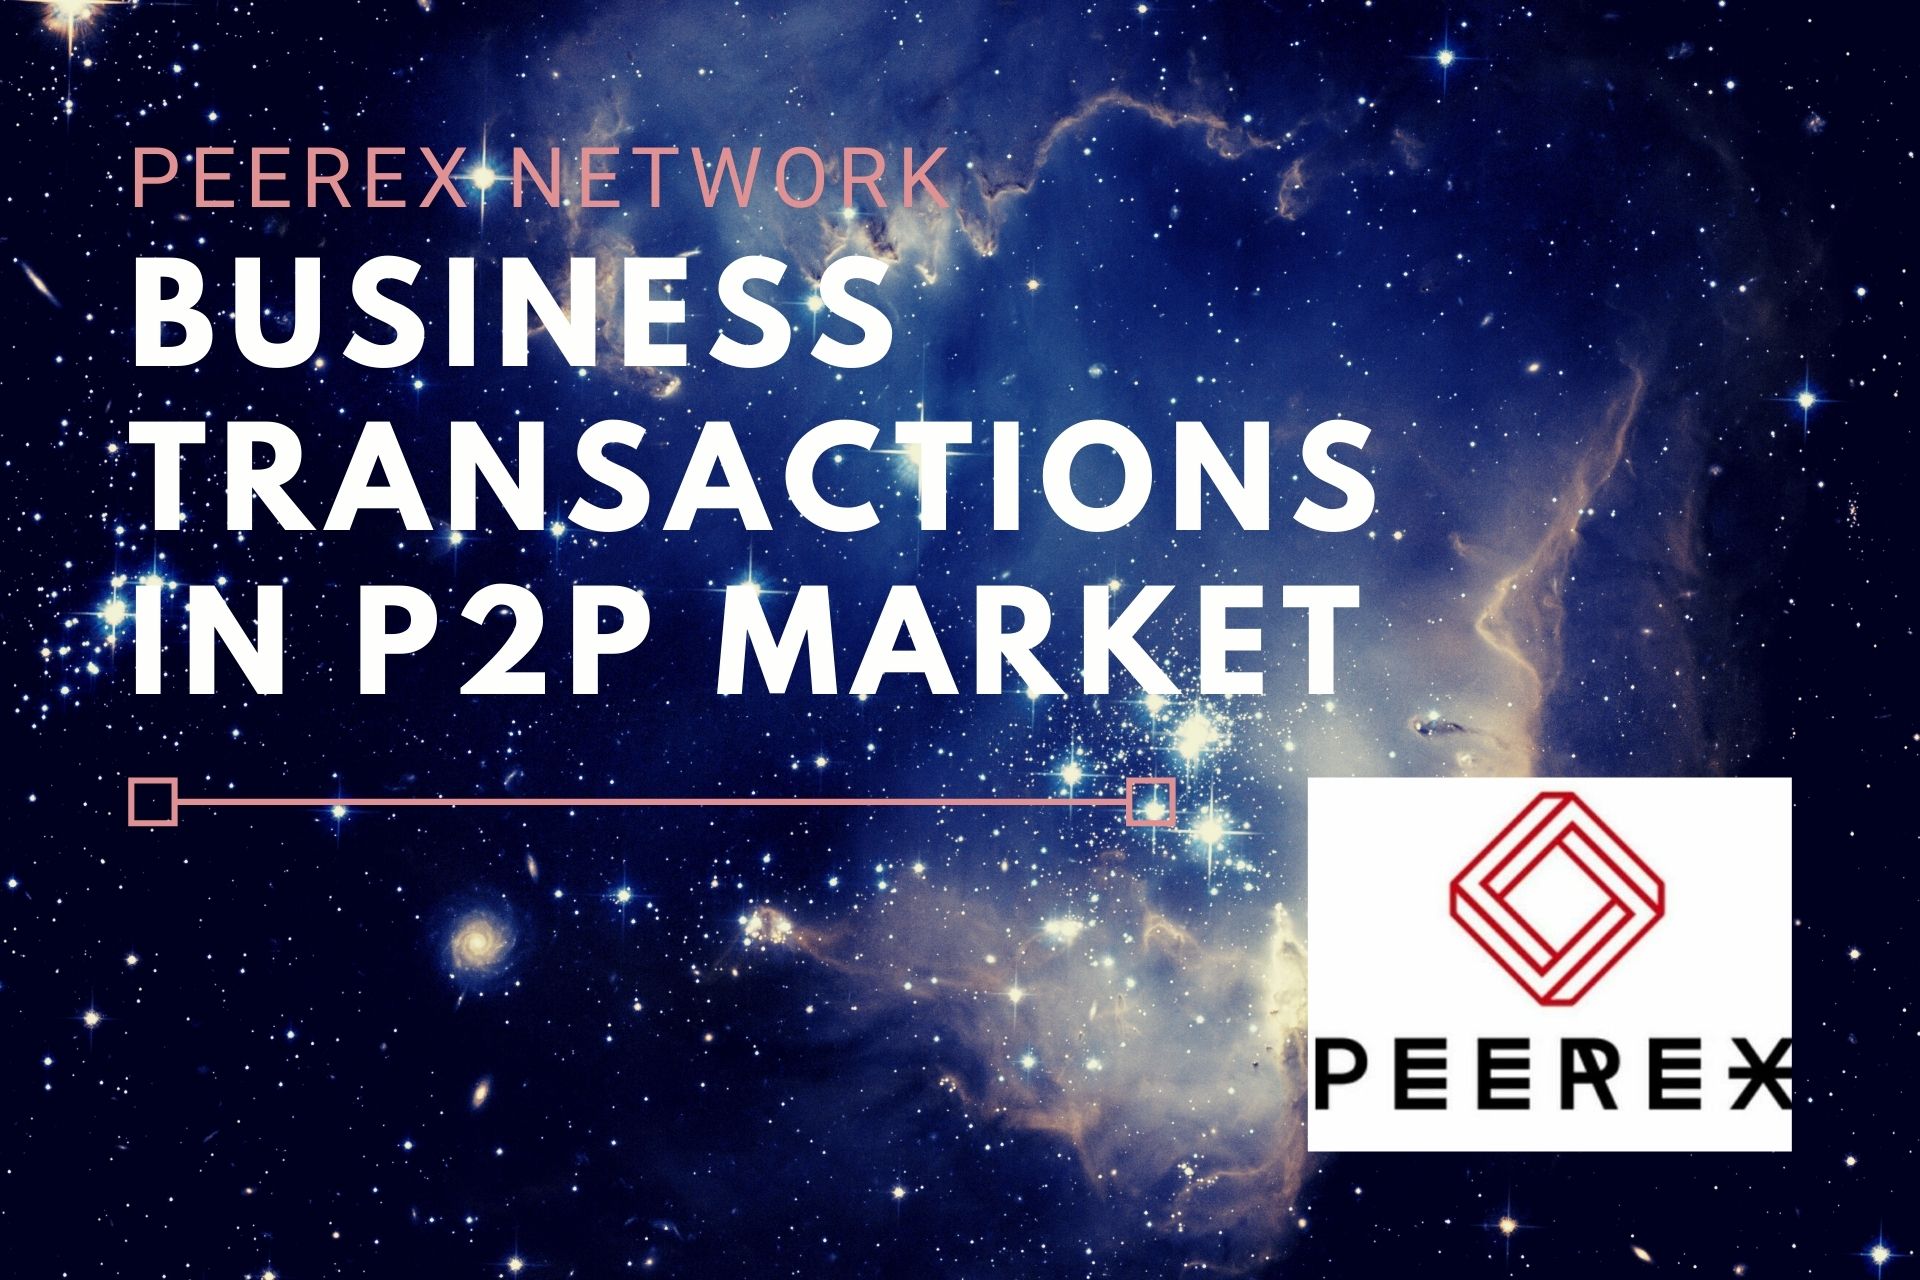 PeerEx network